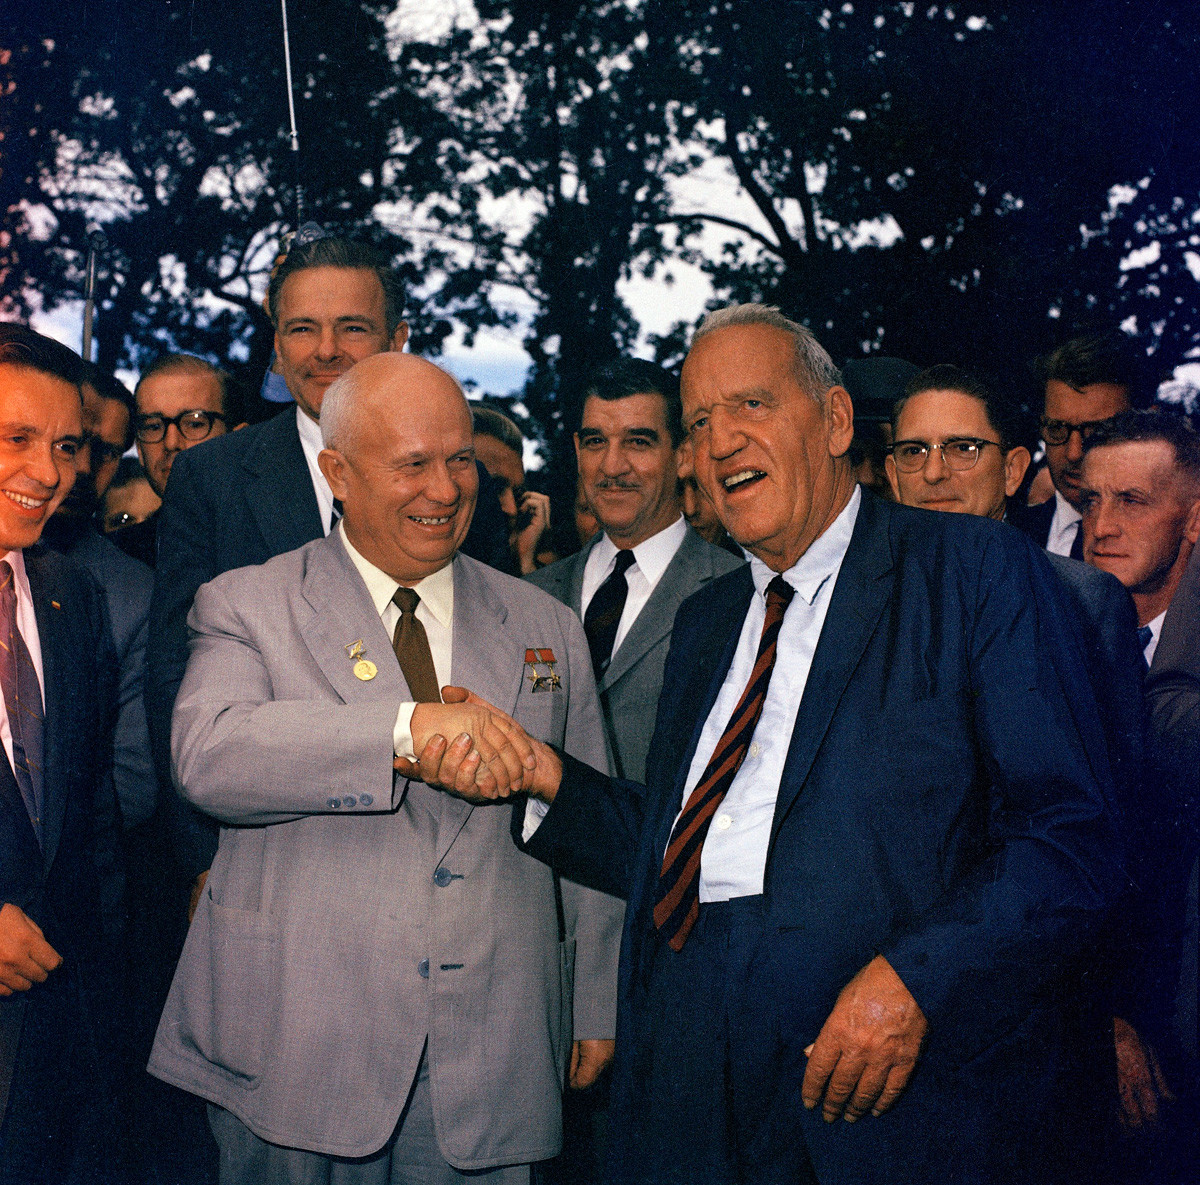 Le leader Nikita Khrouchtchev, à gauche, serre la main de Roswell Garst lors de sa visite aux États-Unis, 23 septembre 1959.